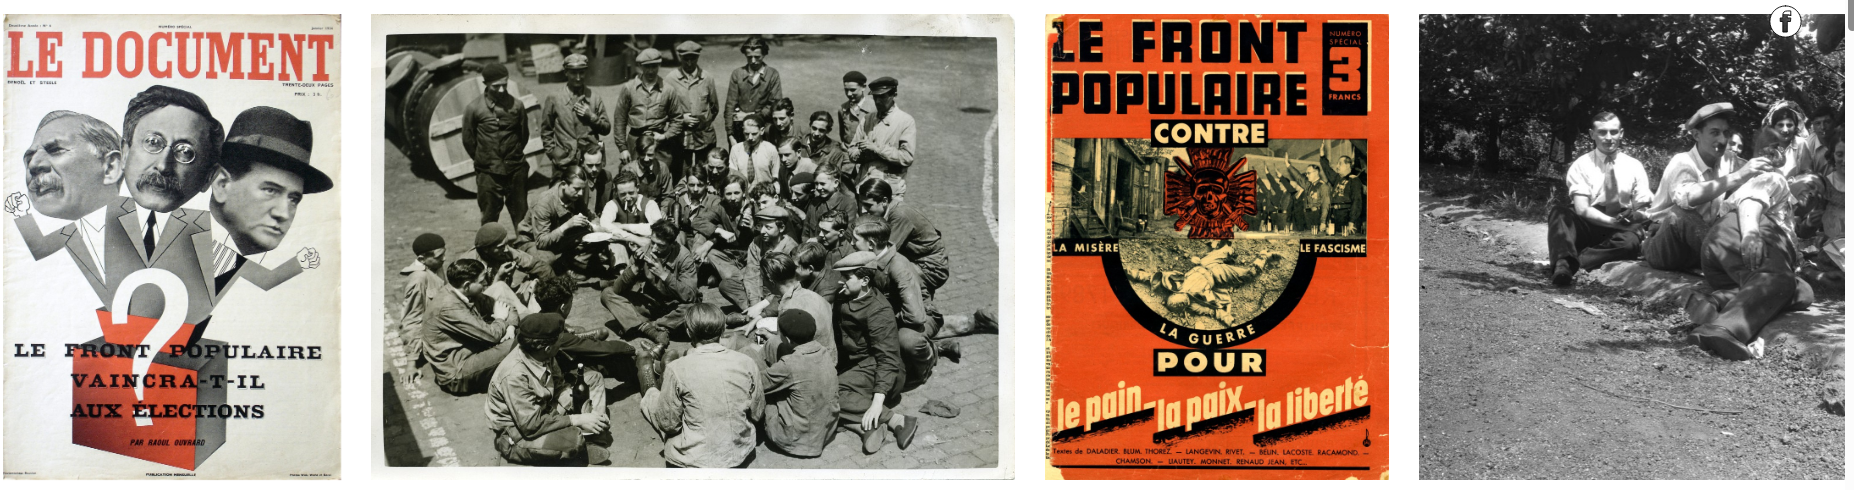 1936: NOUVELLES IMAGES, NOUVEAUX REGARDS SUR LE FRONT POPULAIRE